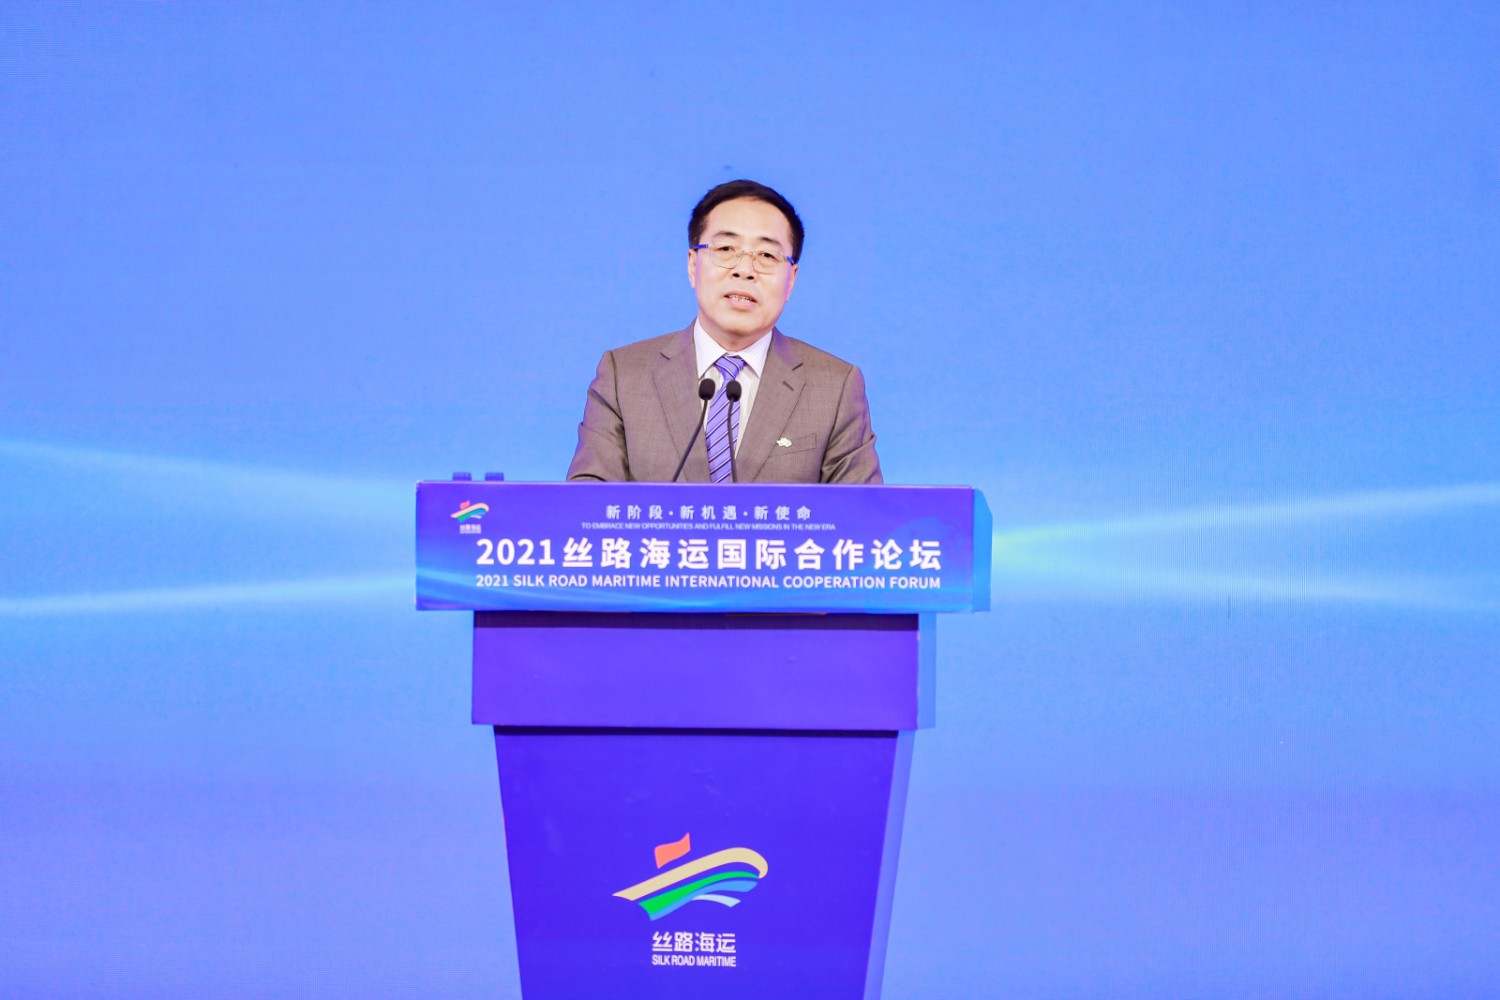 中国航海学会常务副理事长张宝晨：“丝路海运”品牌知名度和影响力持续提升